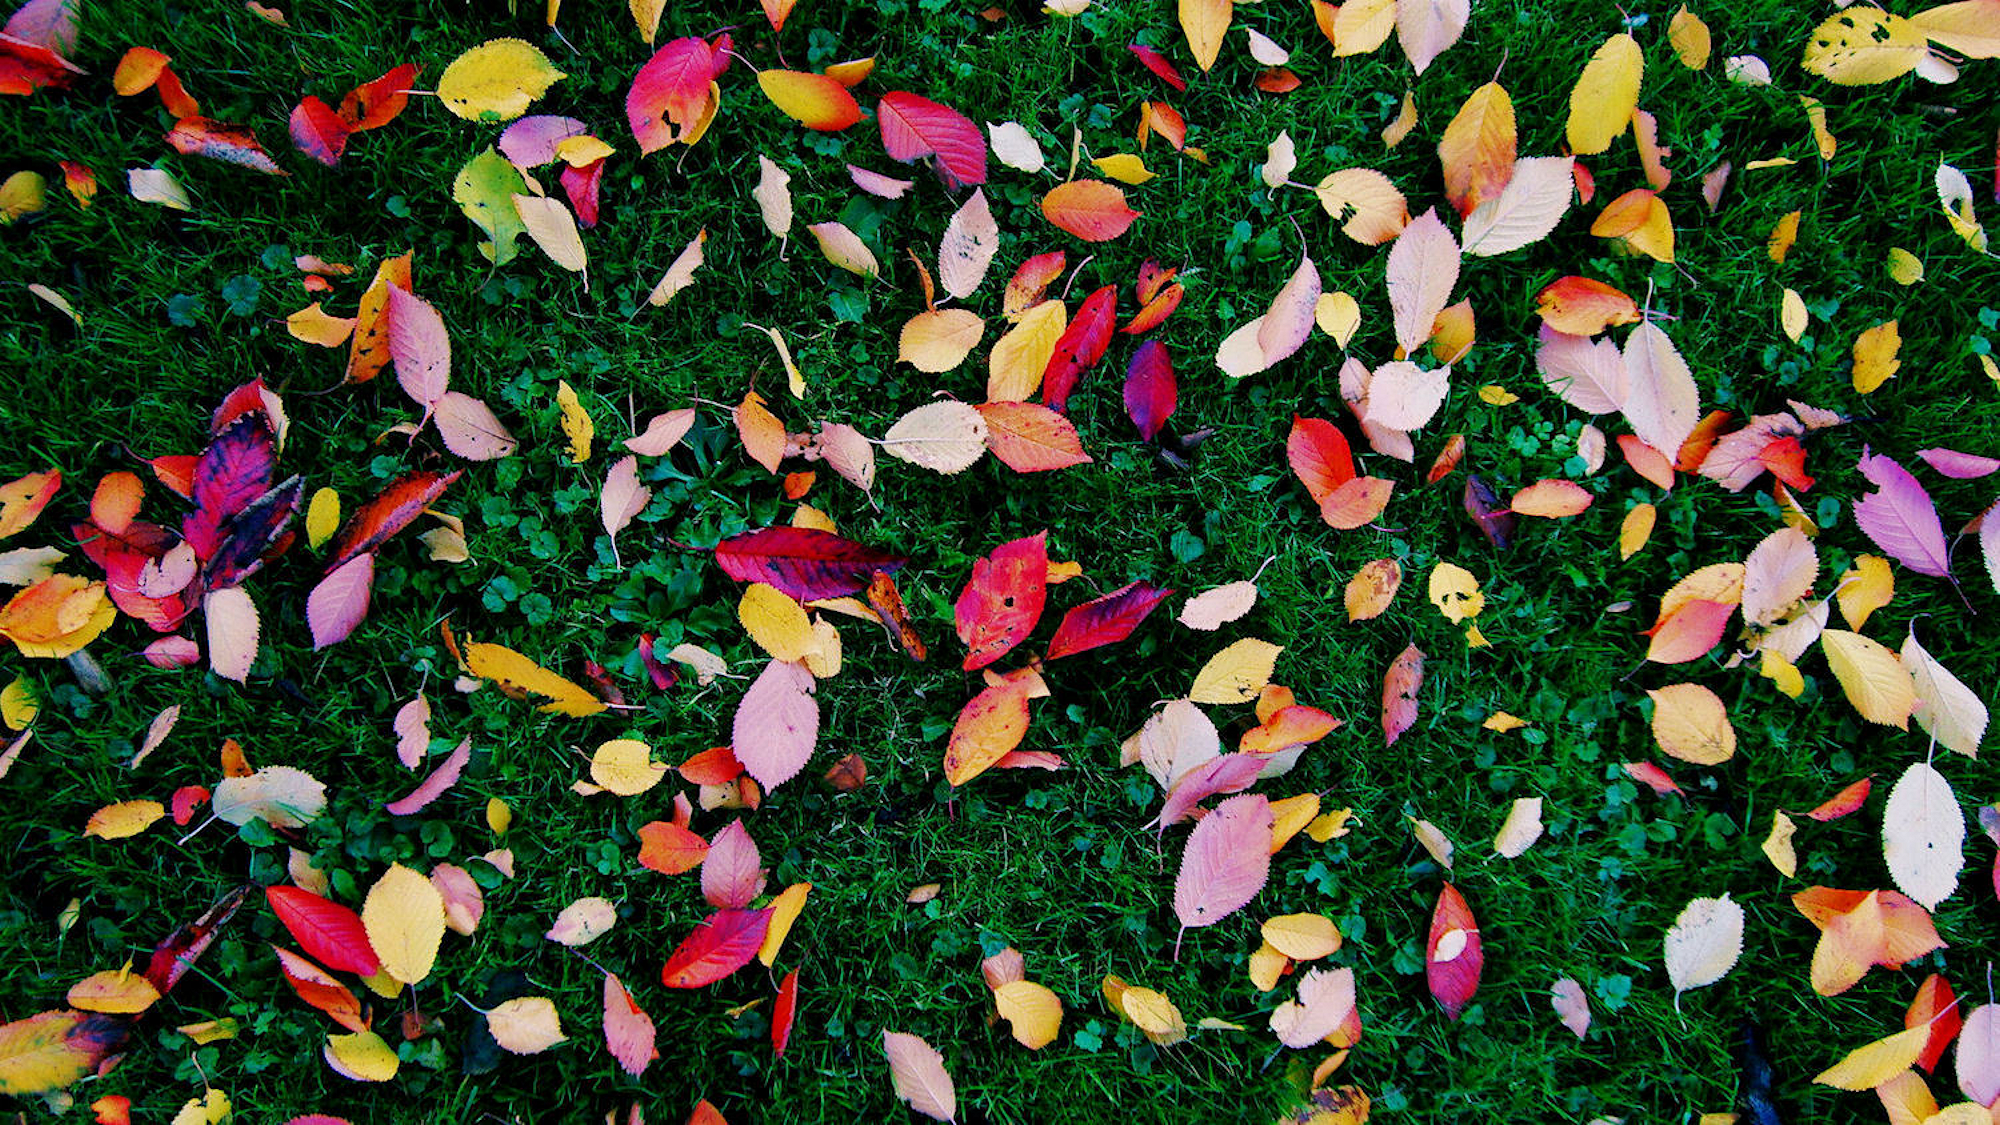 Fall foliage photo